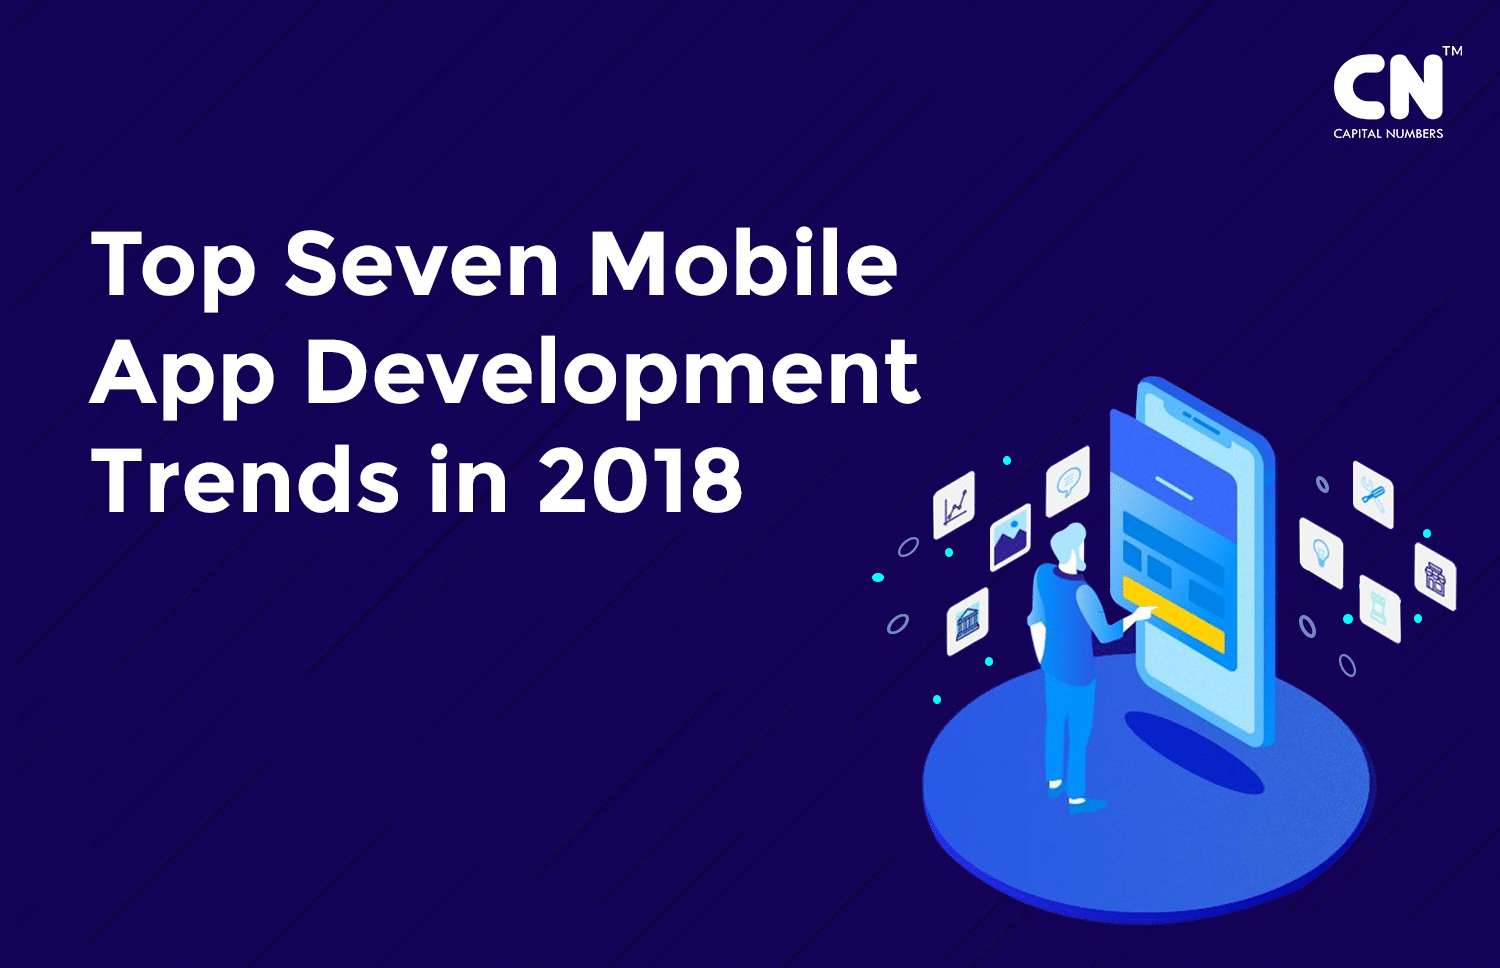 Top Seven Mobile App Development Trends In 2018